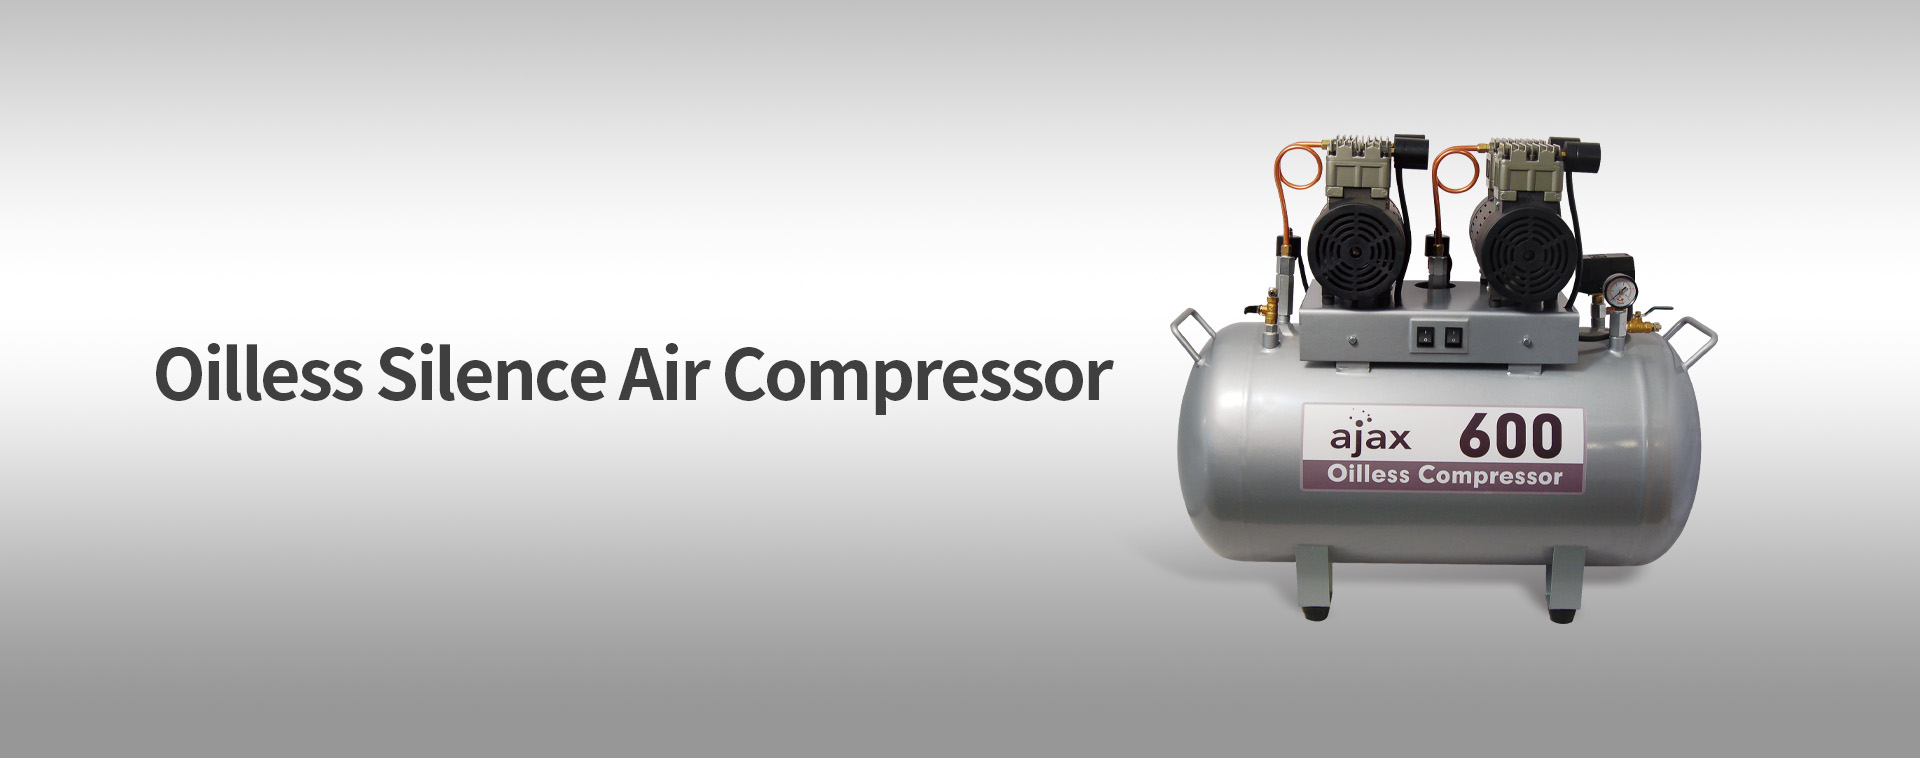 AJAX 600 воздушный компрессор